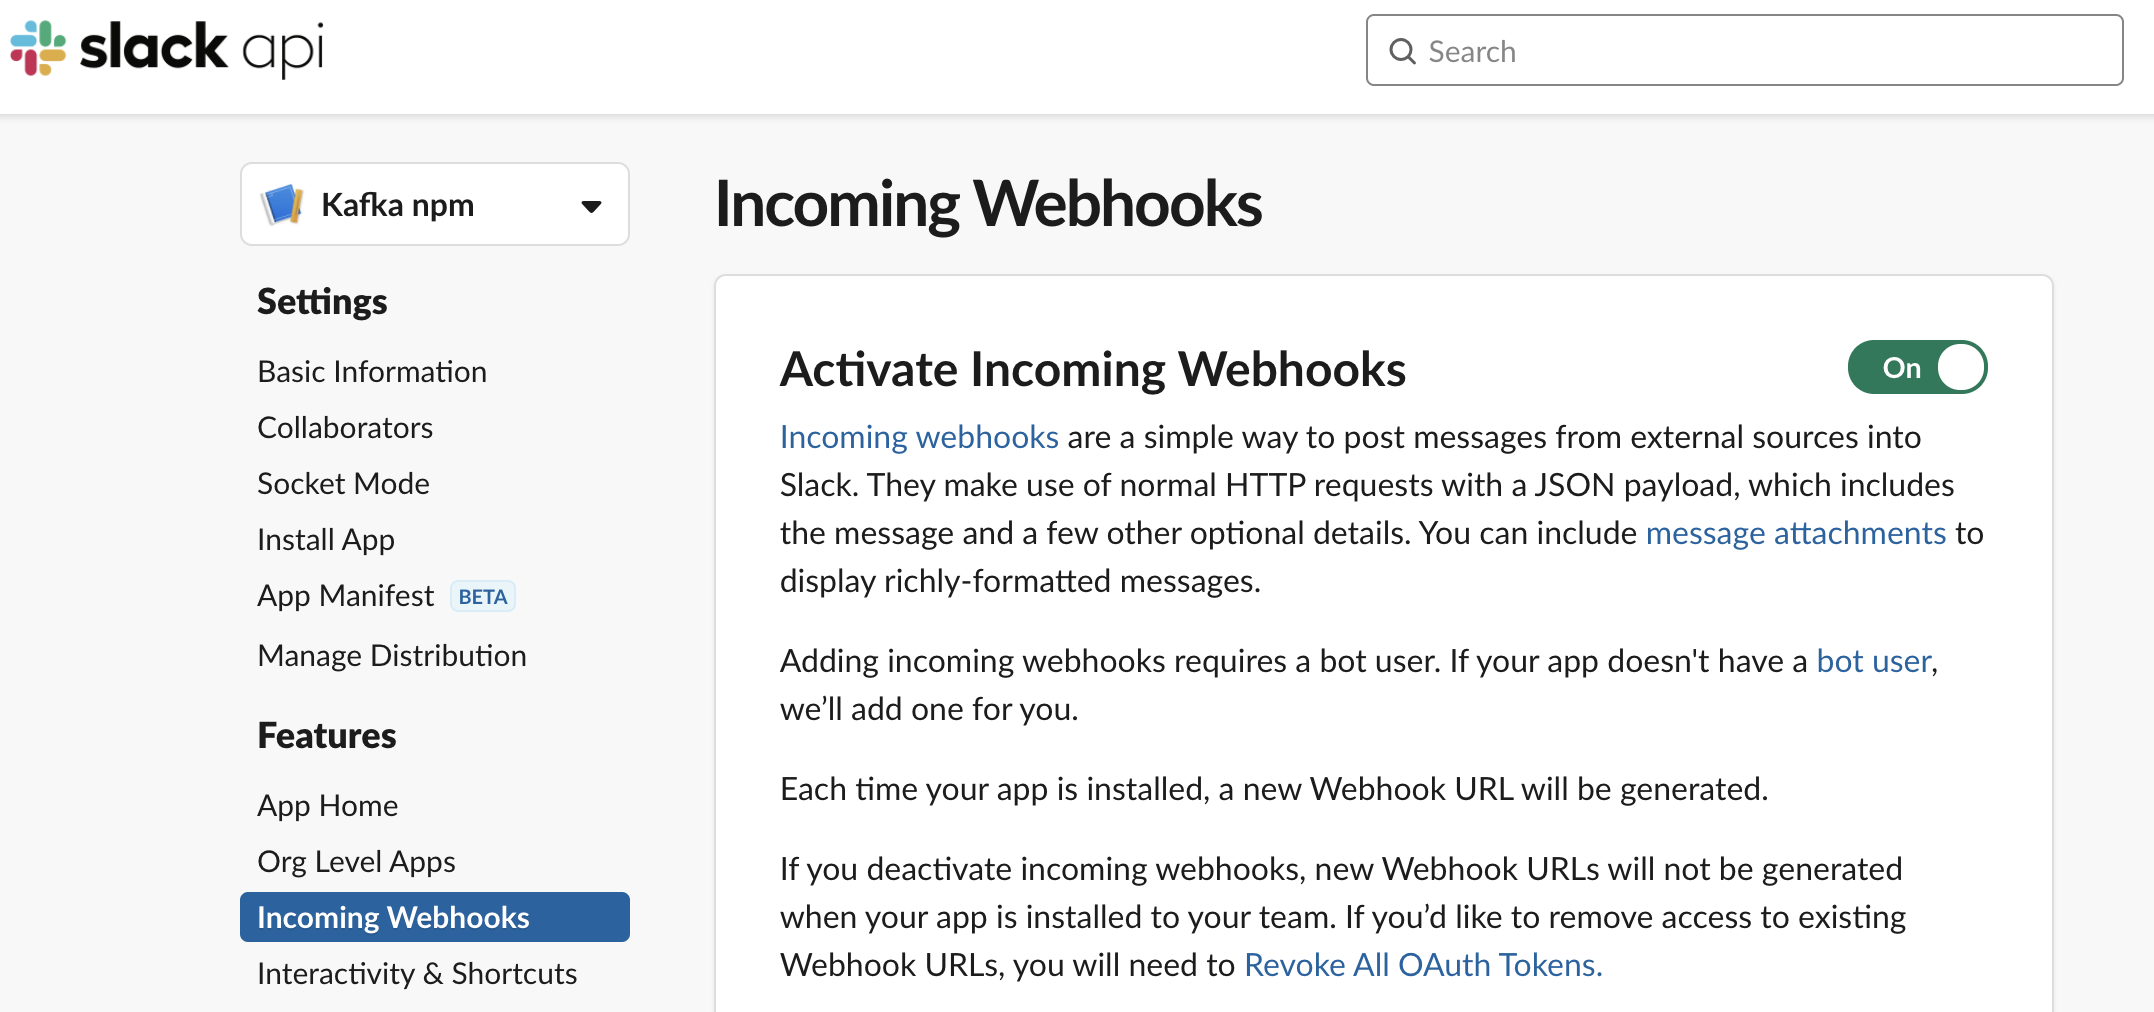 Enable Incoming Webhooks